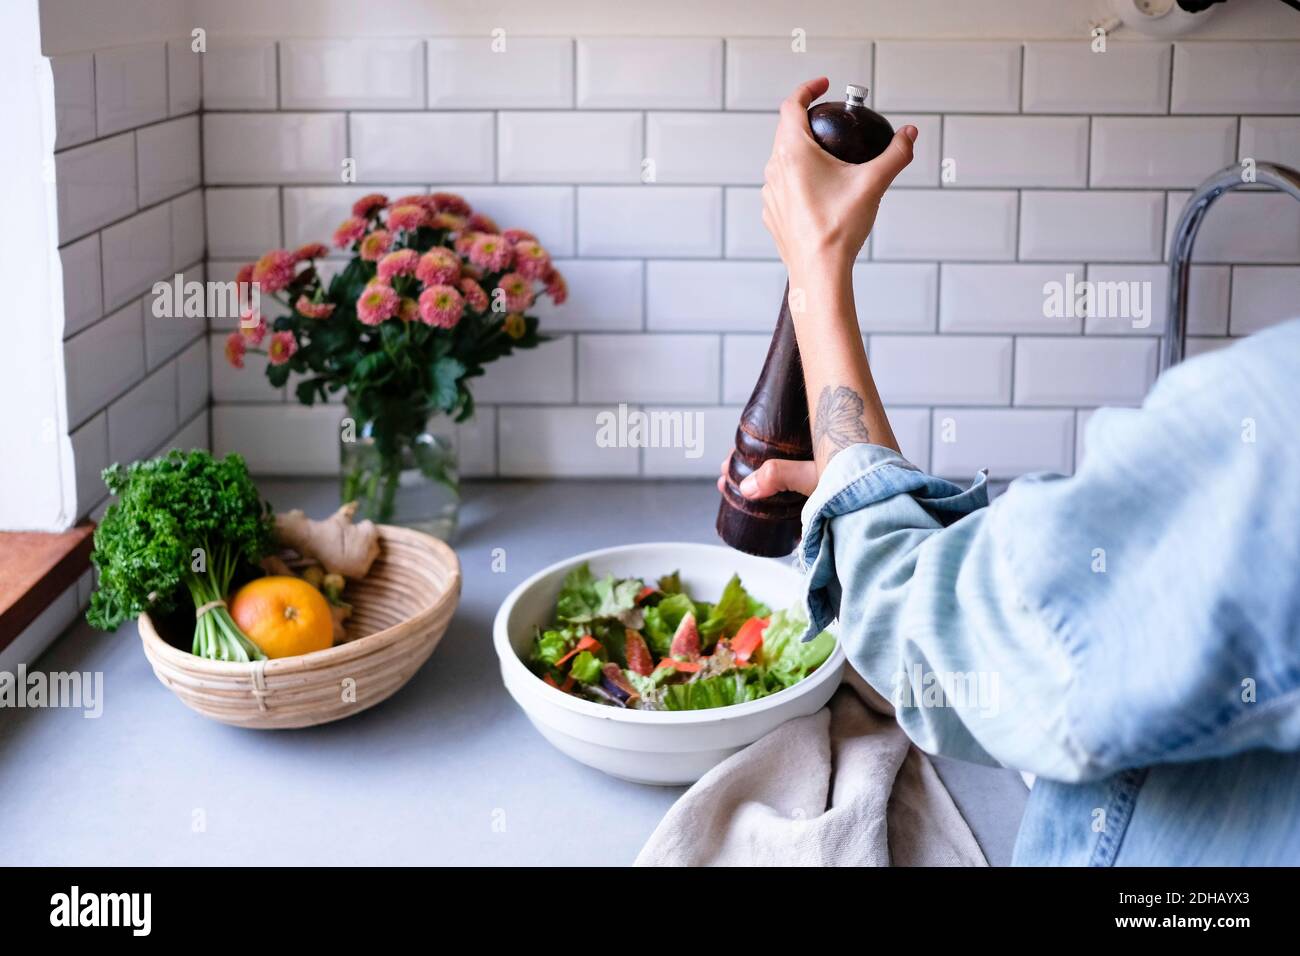 Immagine tagliata di insalata condita donna al banco della cucina Foto Stock